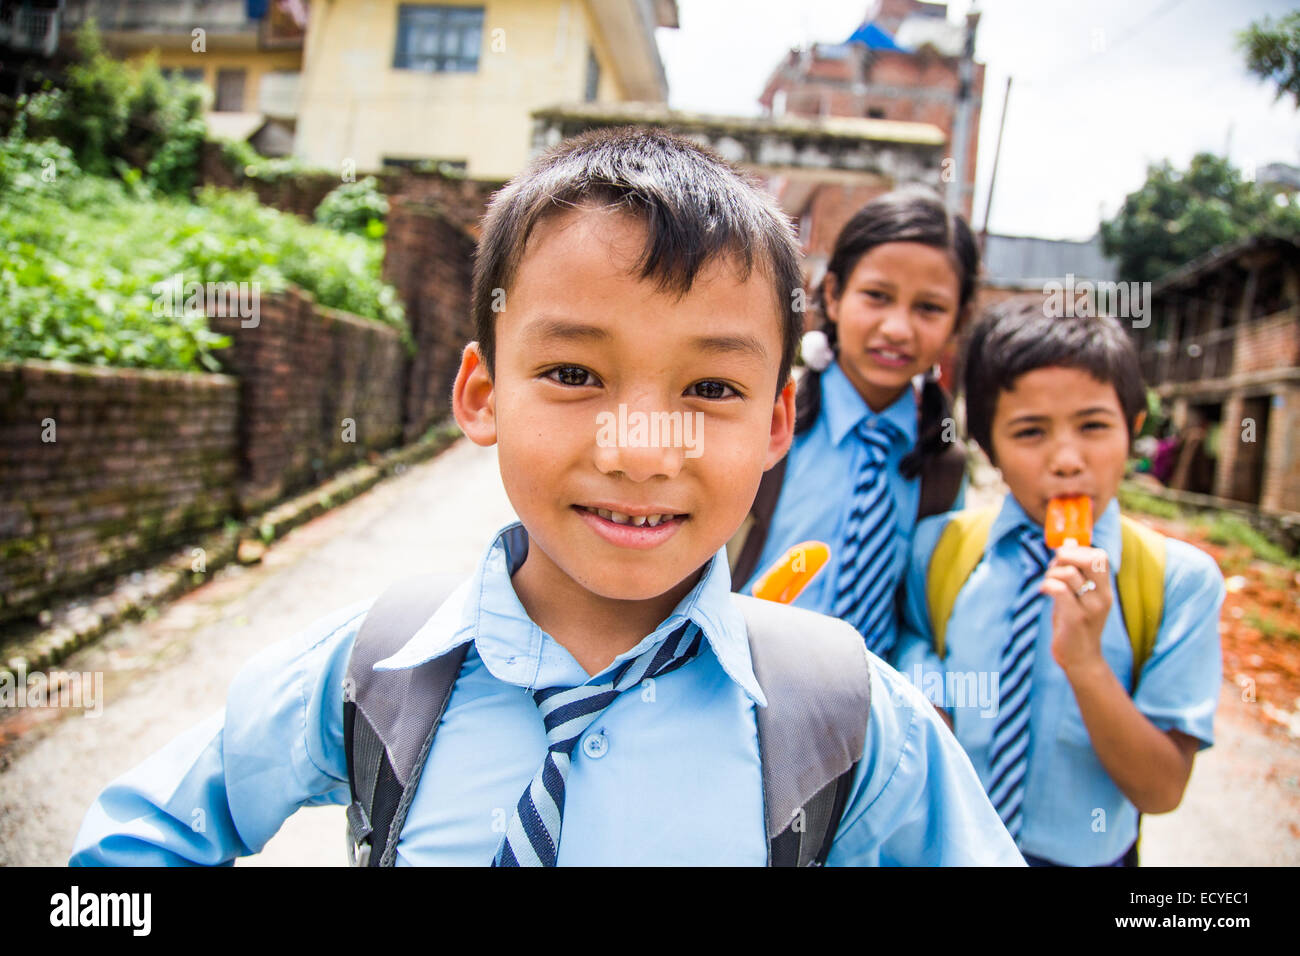 Garçon dans un uniforme scolaire, Katmandou, Népal Banque D'Images